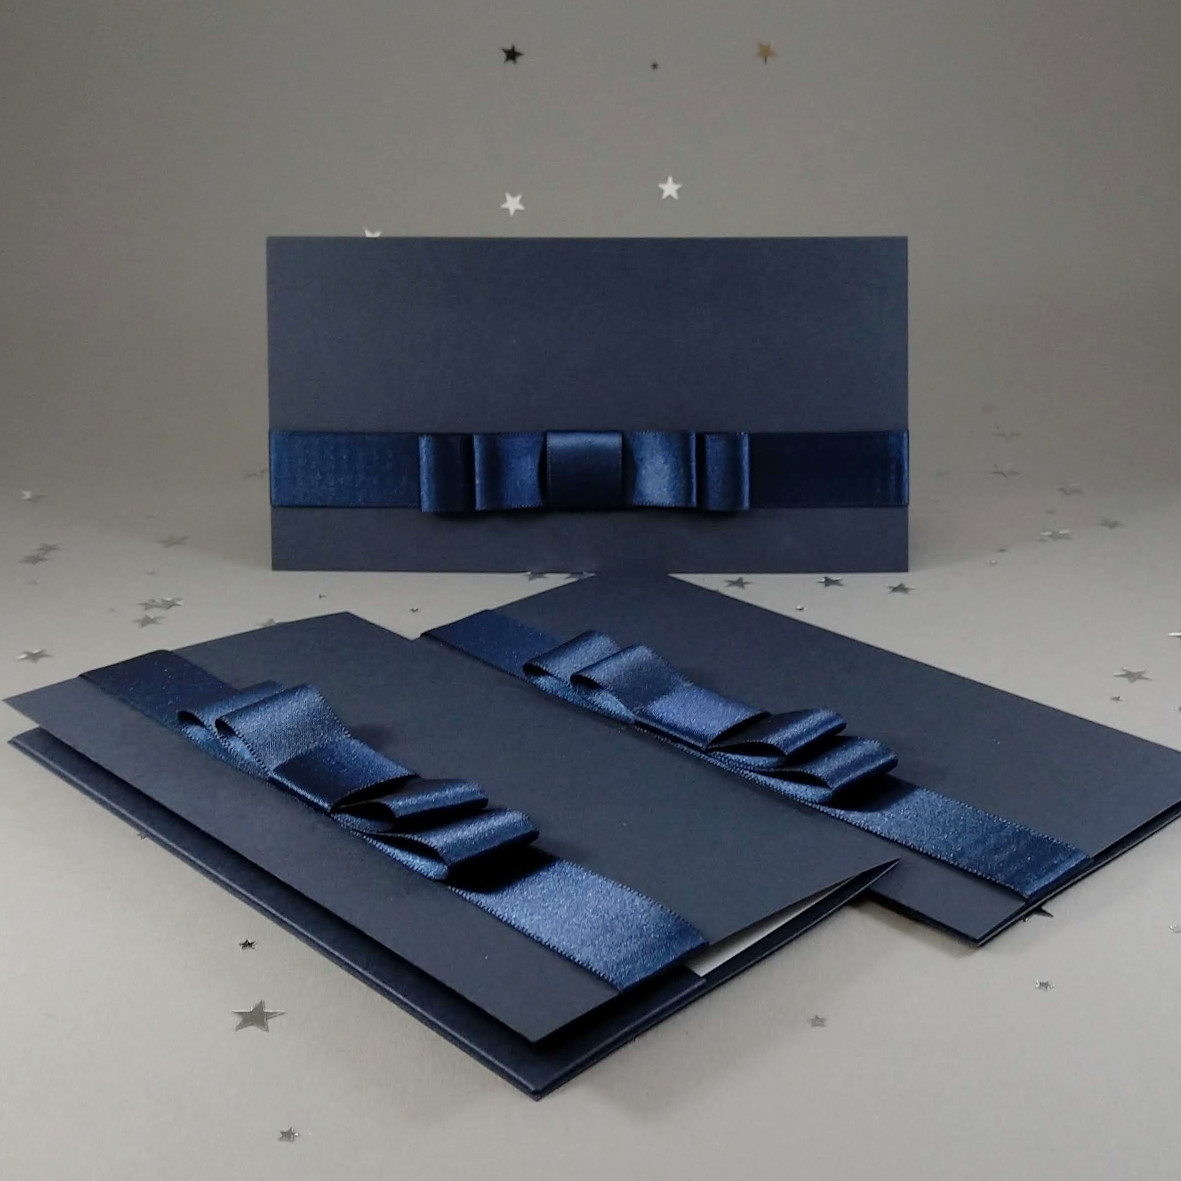 Dárková kapsa DL formátu z matného, mírně strukturovaného, tmavě modrého papíru, s aplikací z široké atlasové stuhy, celkový rozměr 206 × 106 mm.